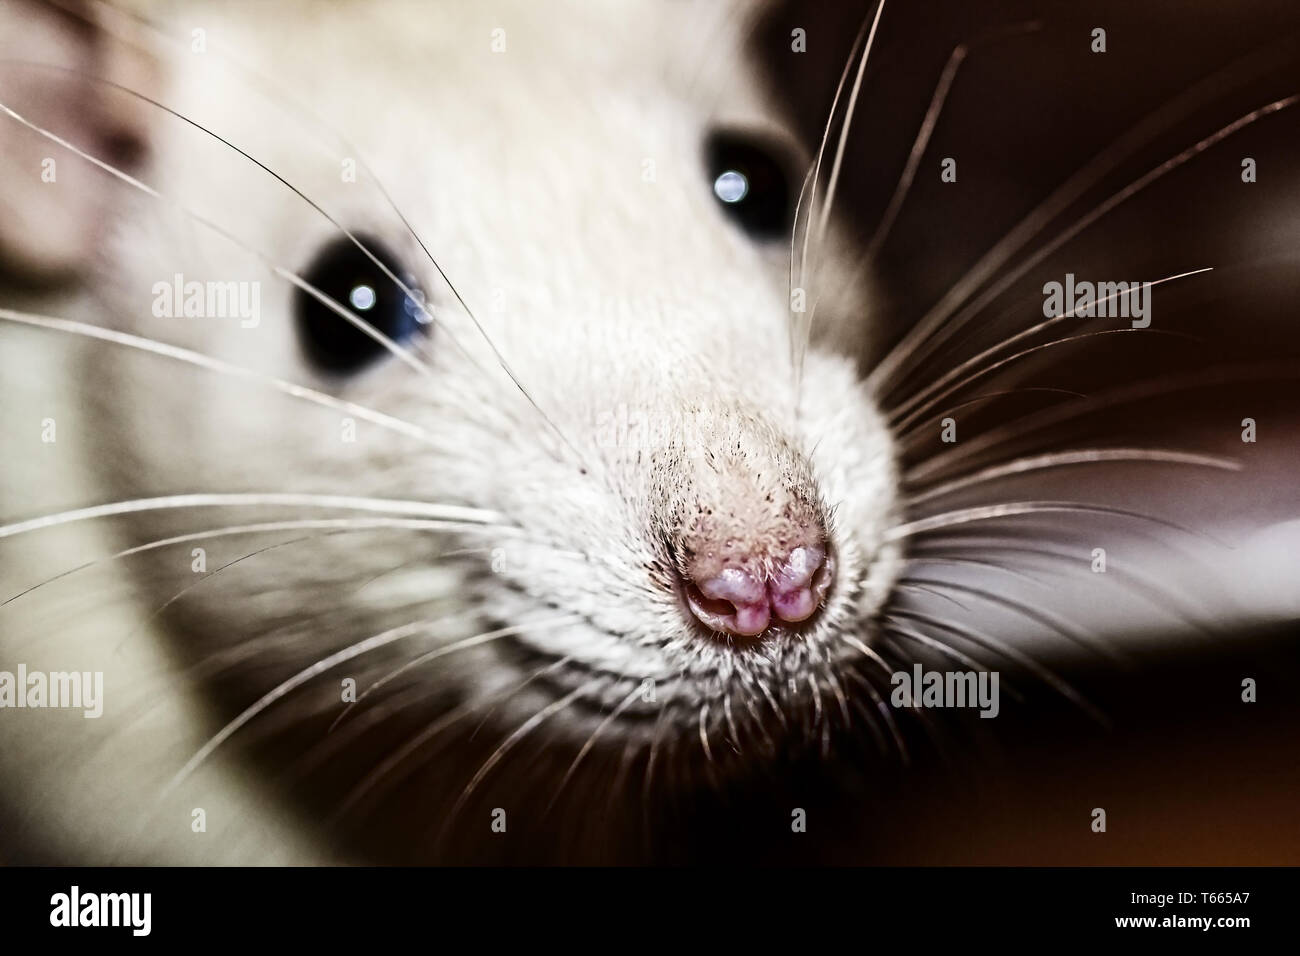 closeup of a white rats nose Stock Photo